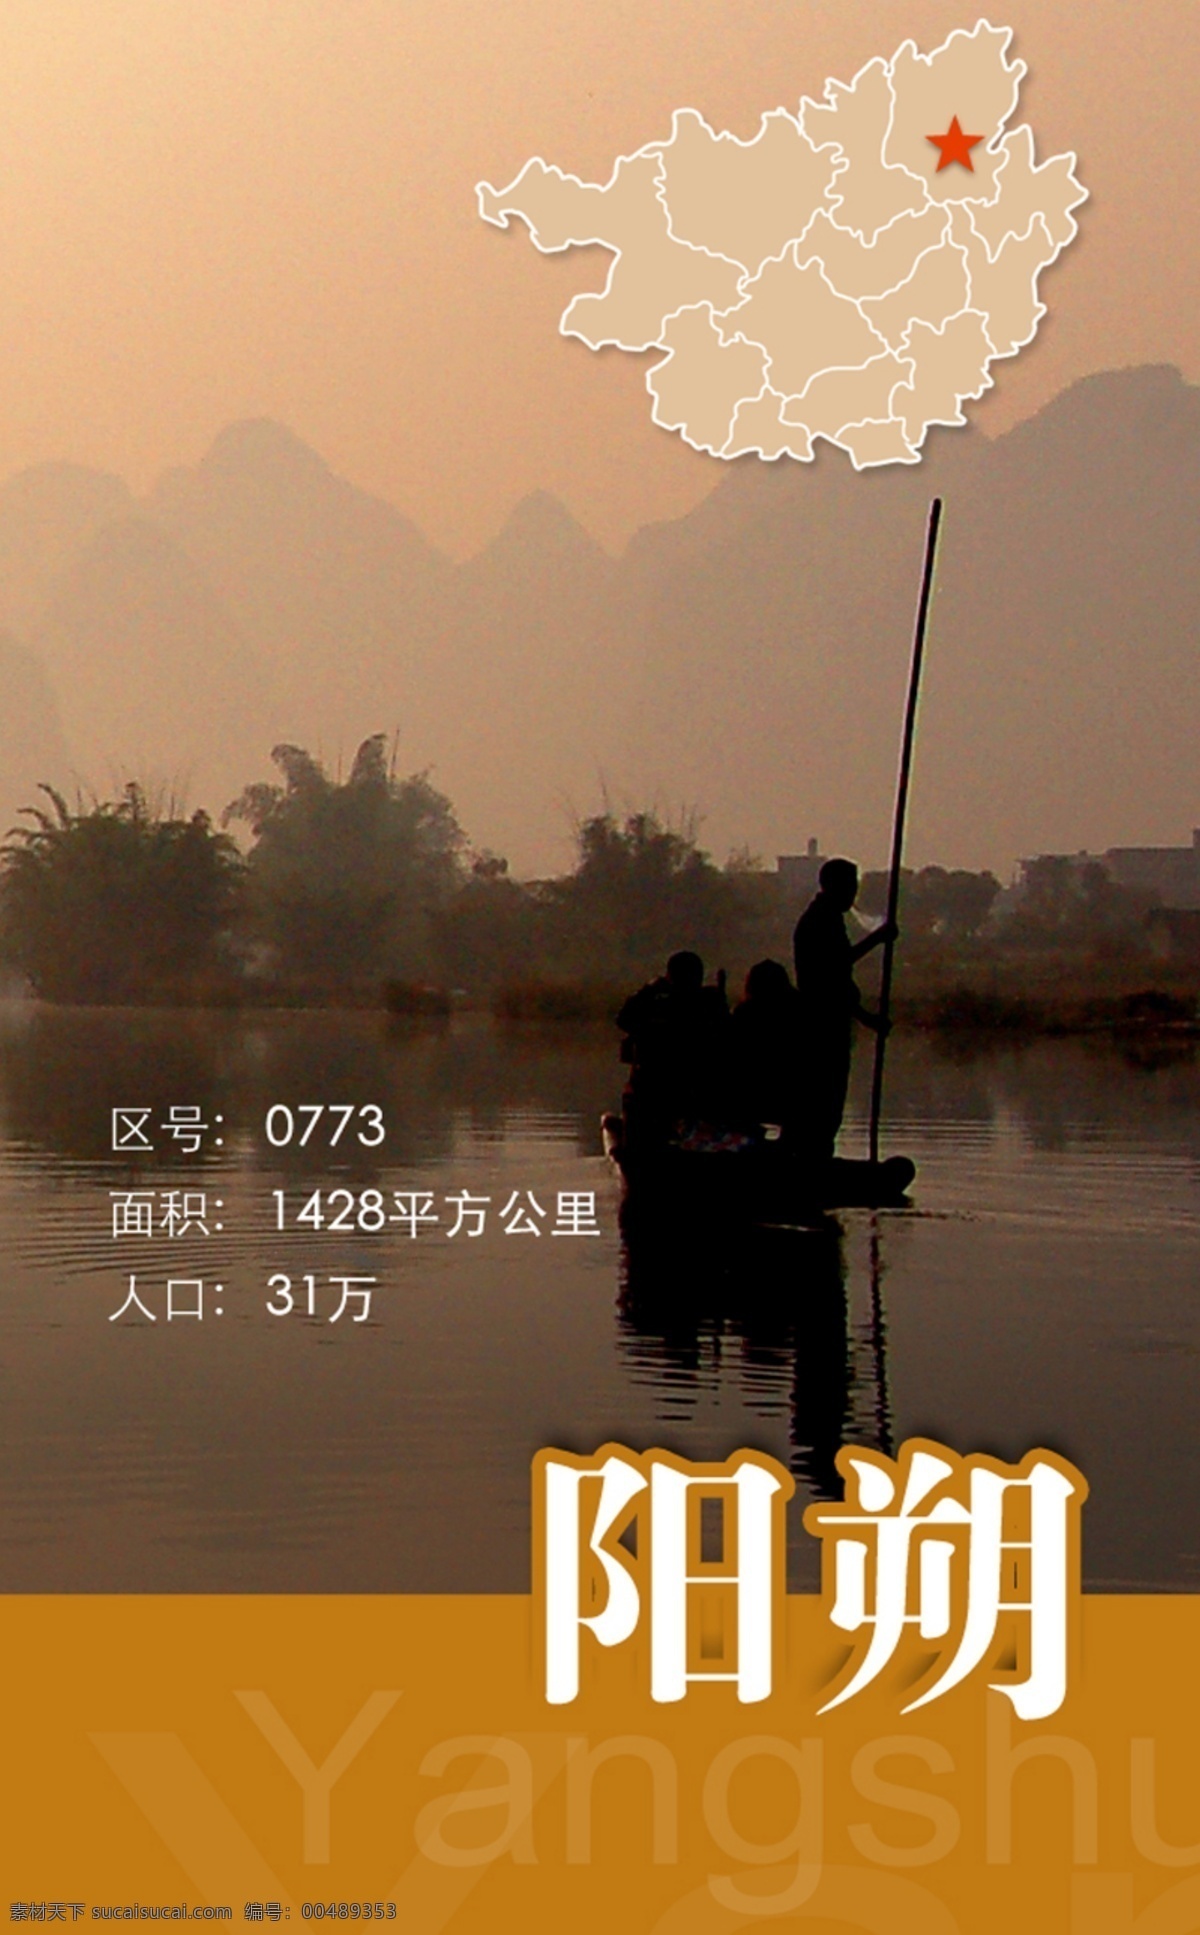 广西 桂林 阳朔旅游 app 引导 页 引导页 原创设计 其他原创设计